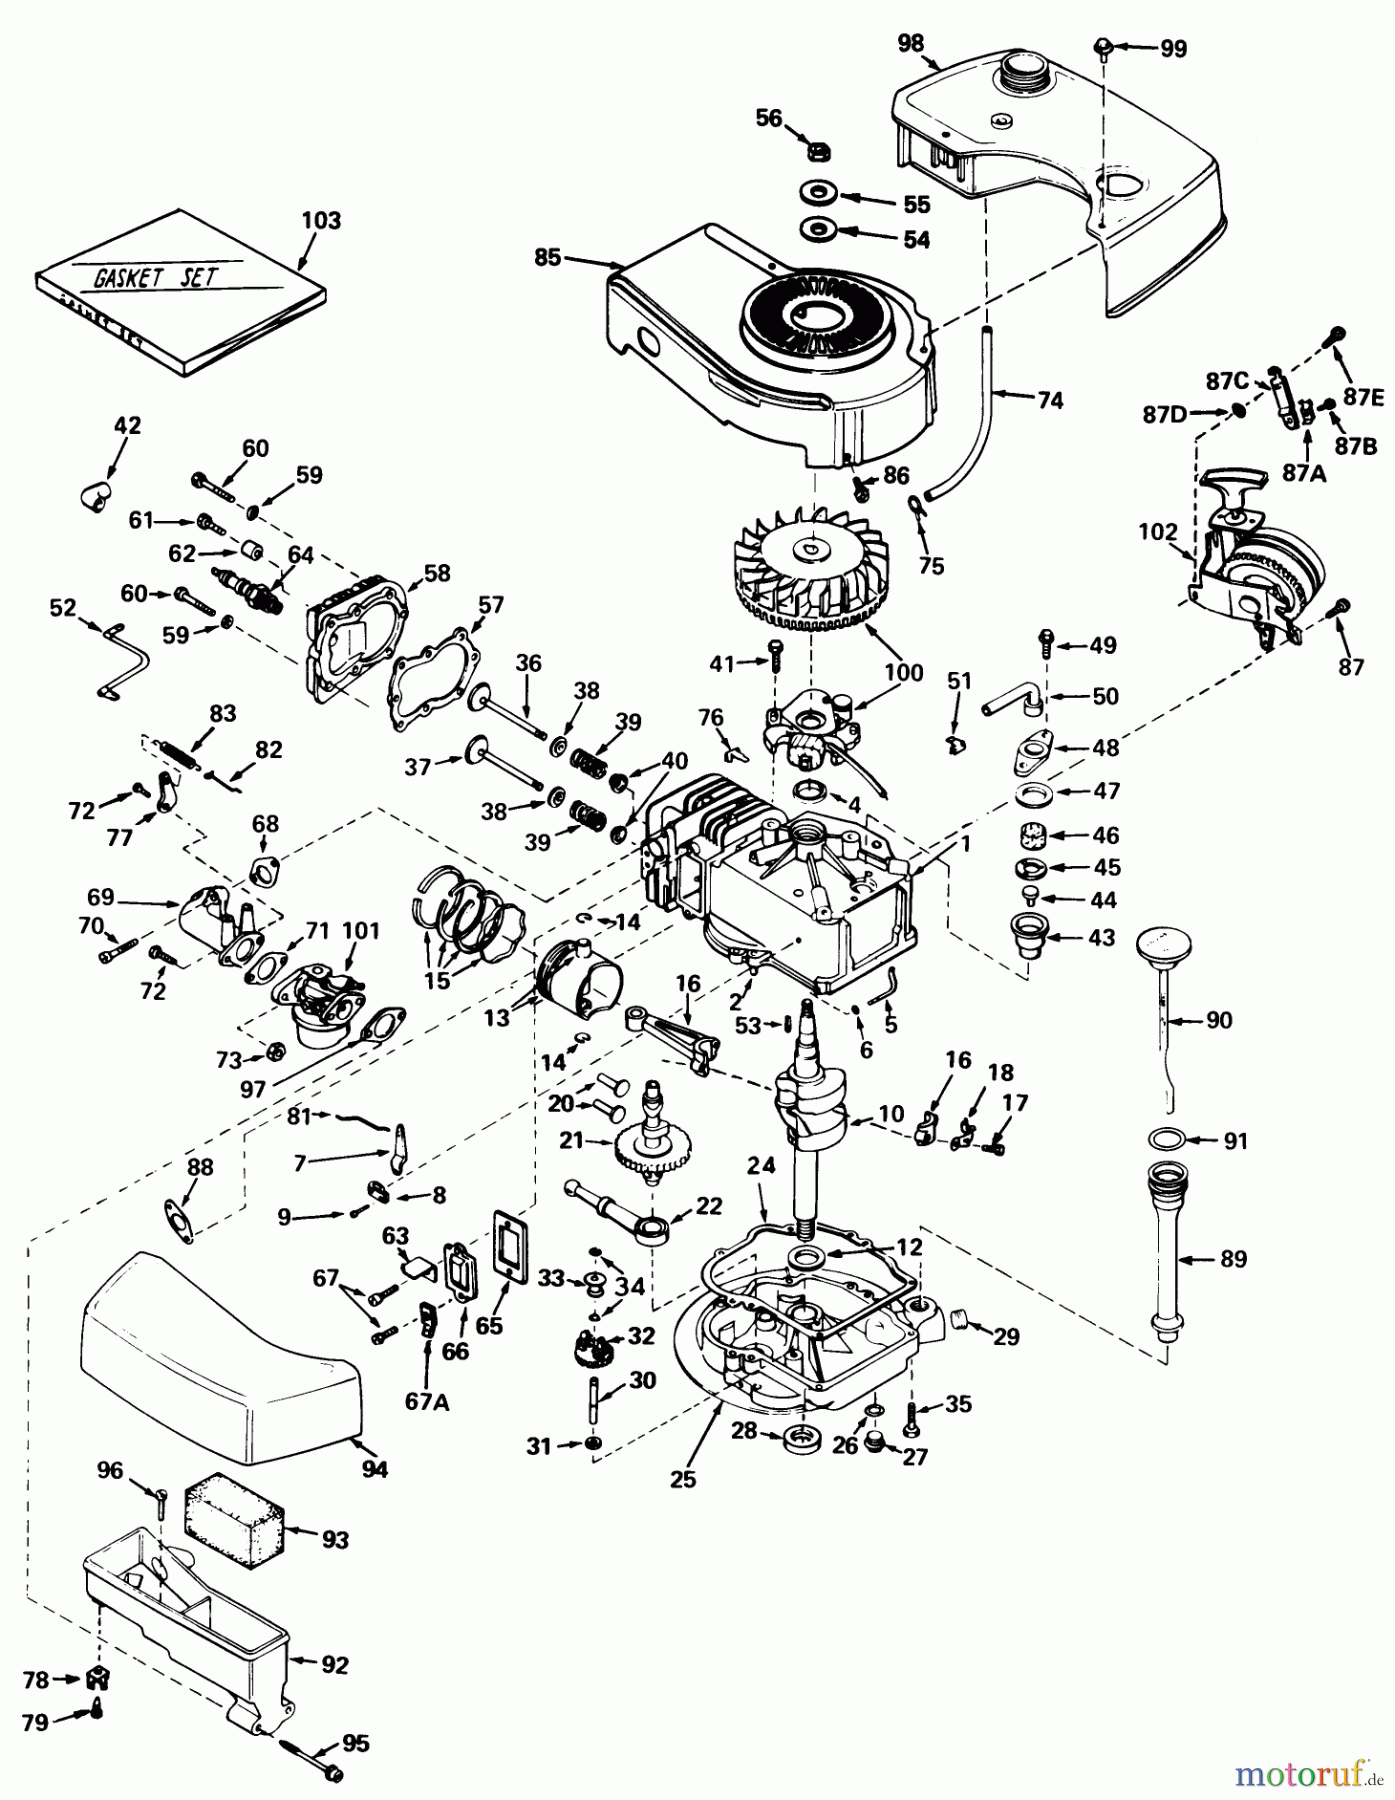  Toro Neu Mowers, Walk-Behind Seite 1 20506 - Toro Lawnmower, 1976 (6000001-6999999) ENGINE TECUMSEH MODEL NO. TNT 120-12003